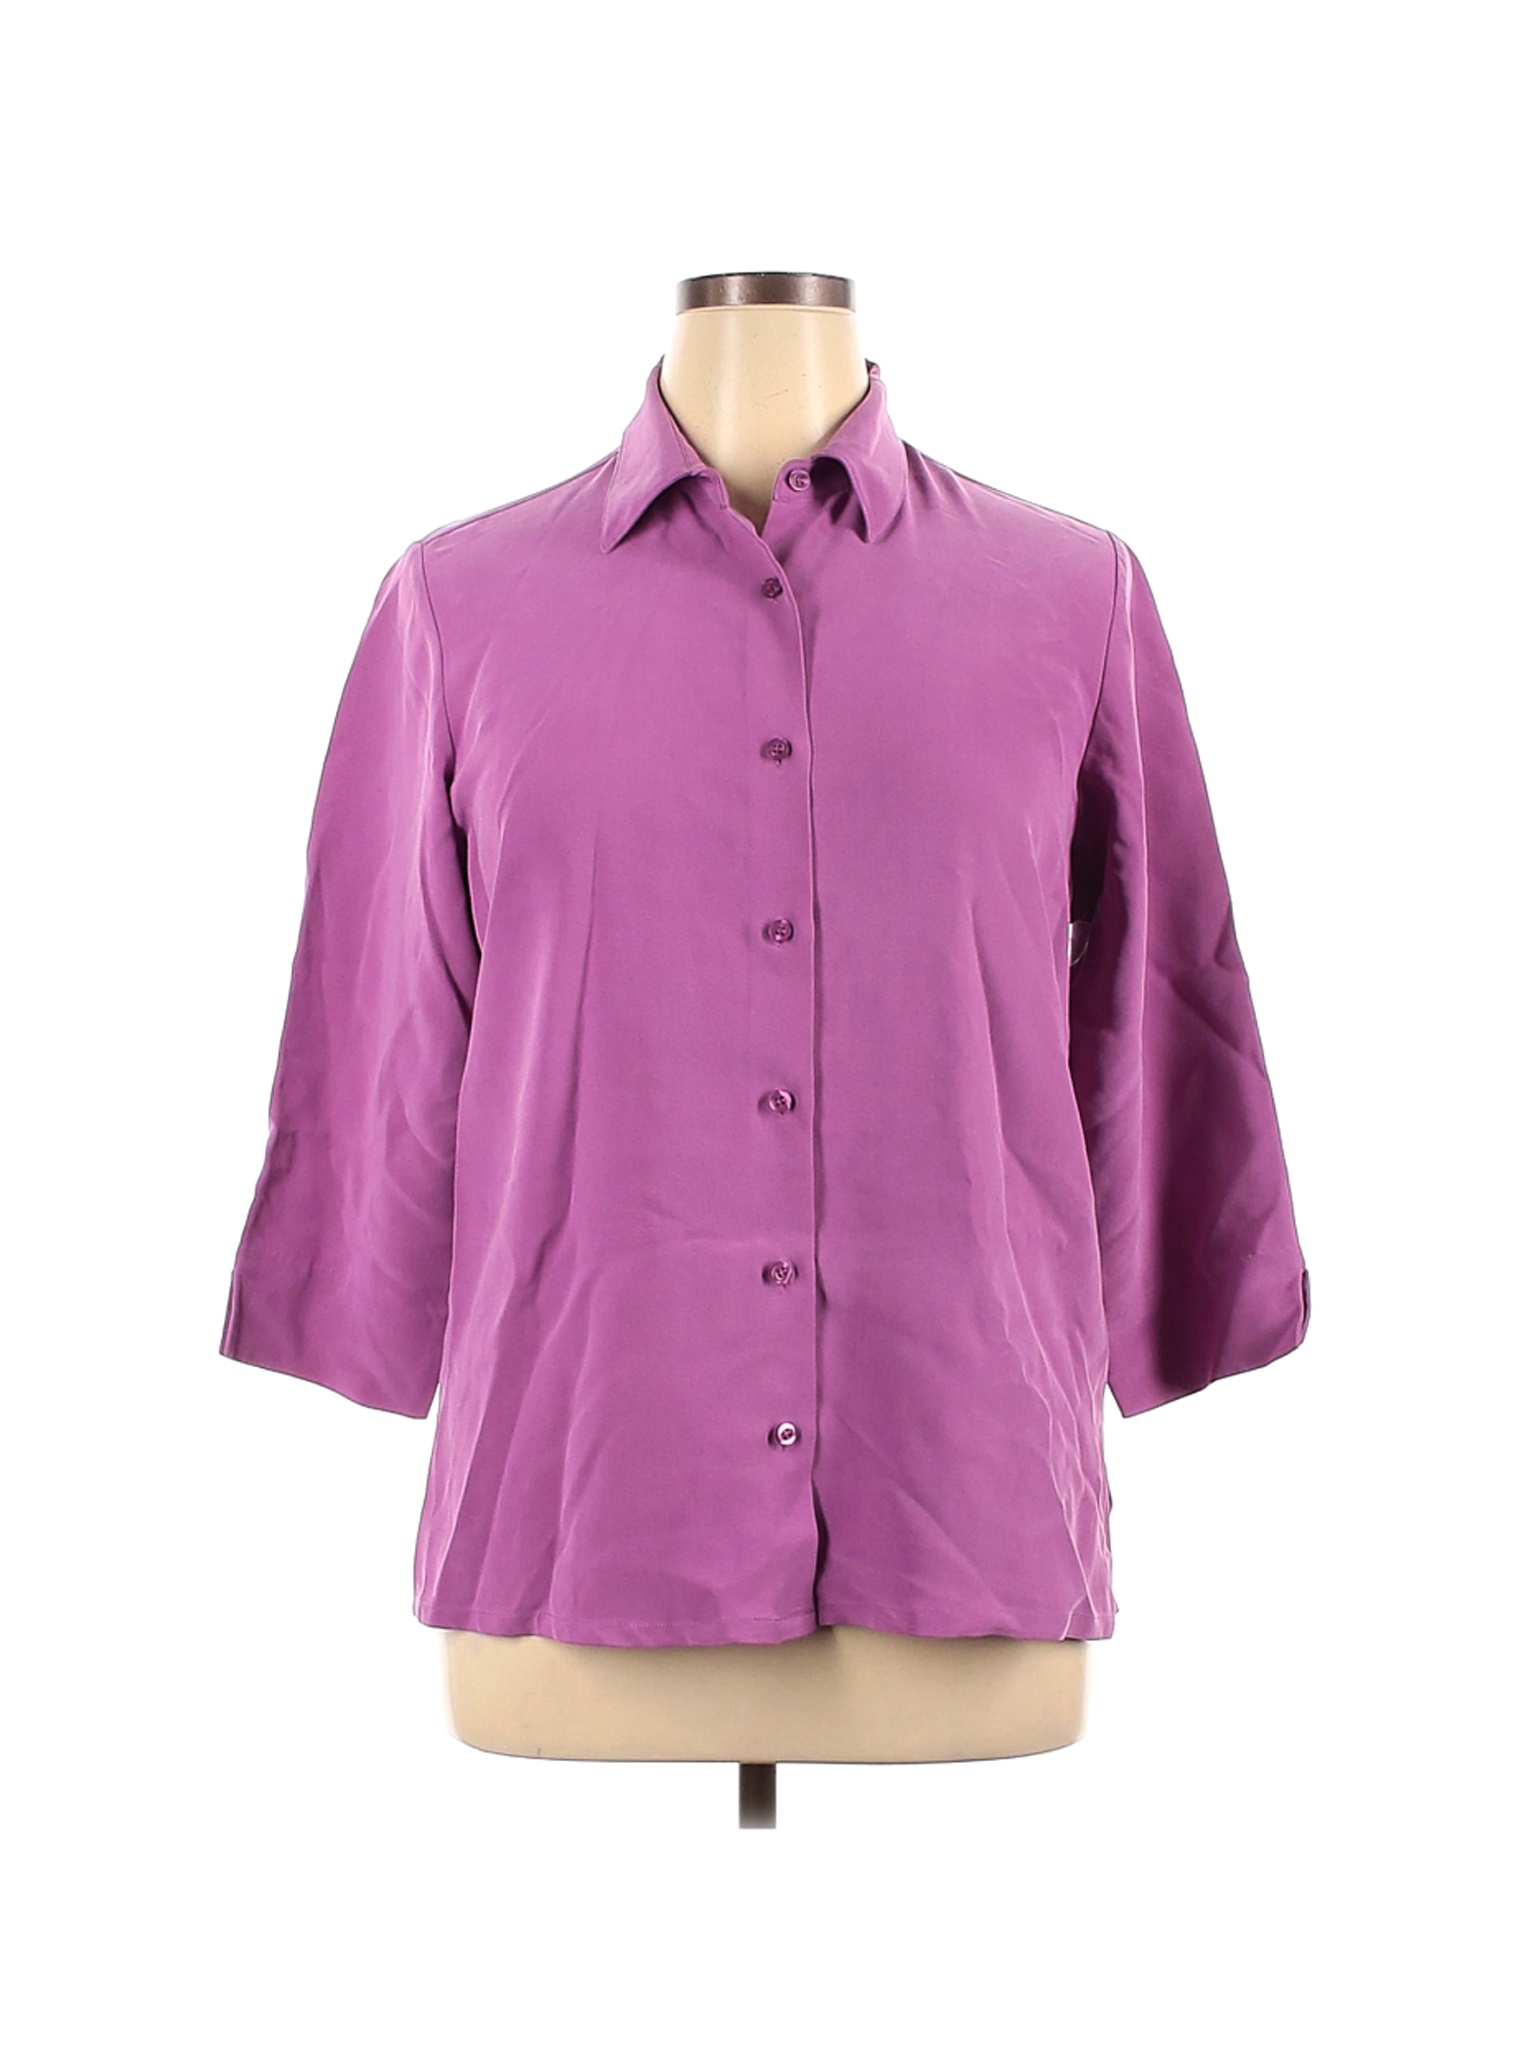 Winter Silks Women Purple Long Sleeve Silk Top XL | eBay